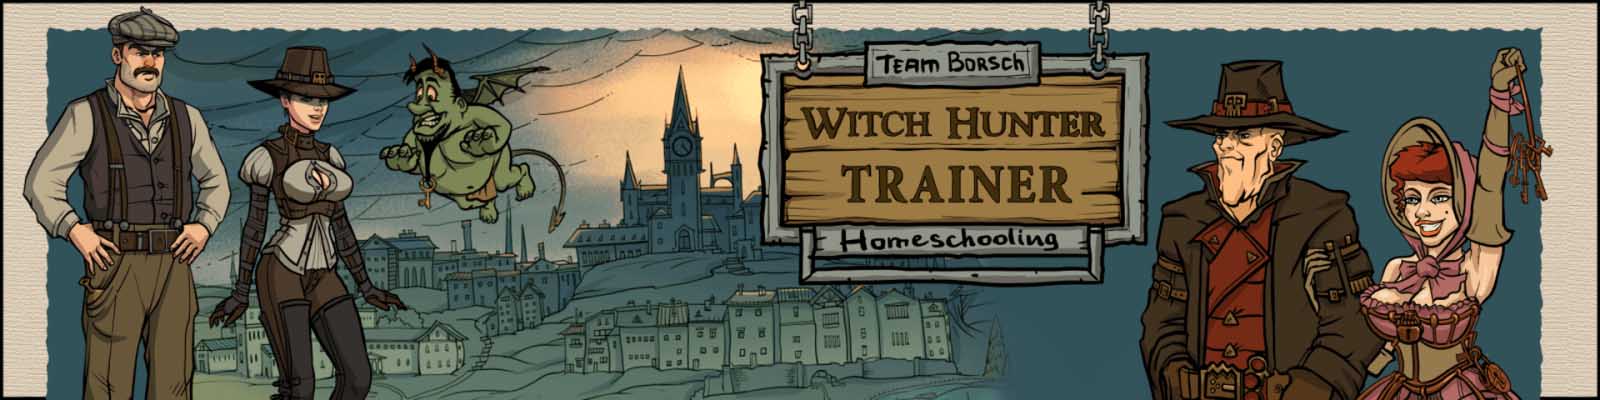 Witch Hunter Trainer 3d gra dla dorosłych